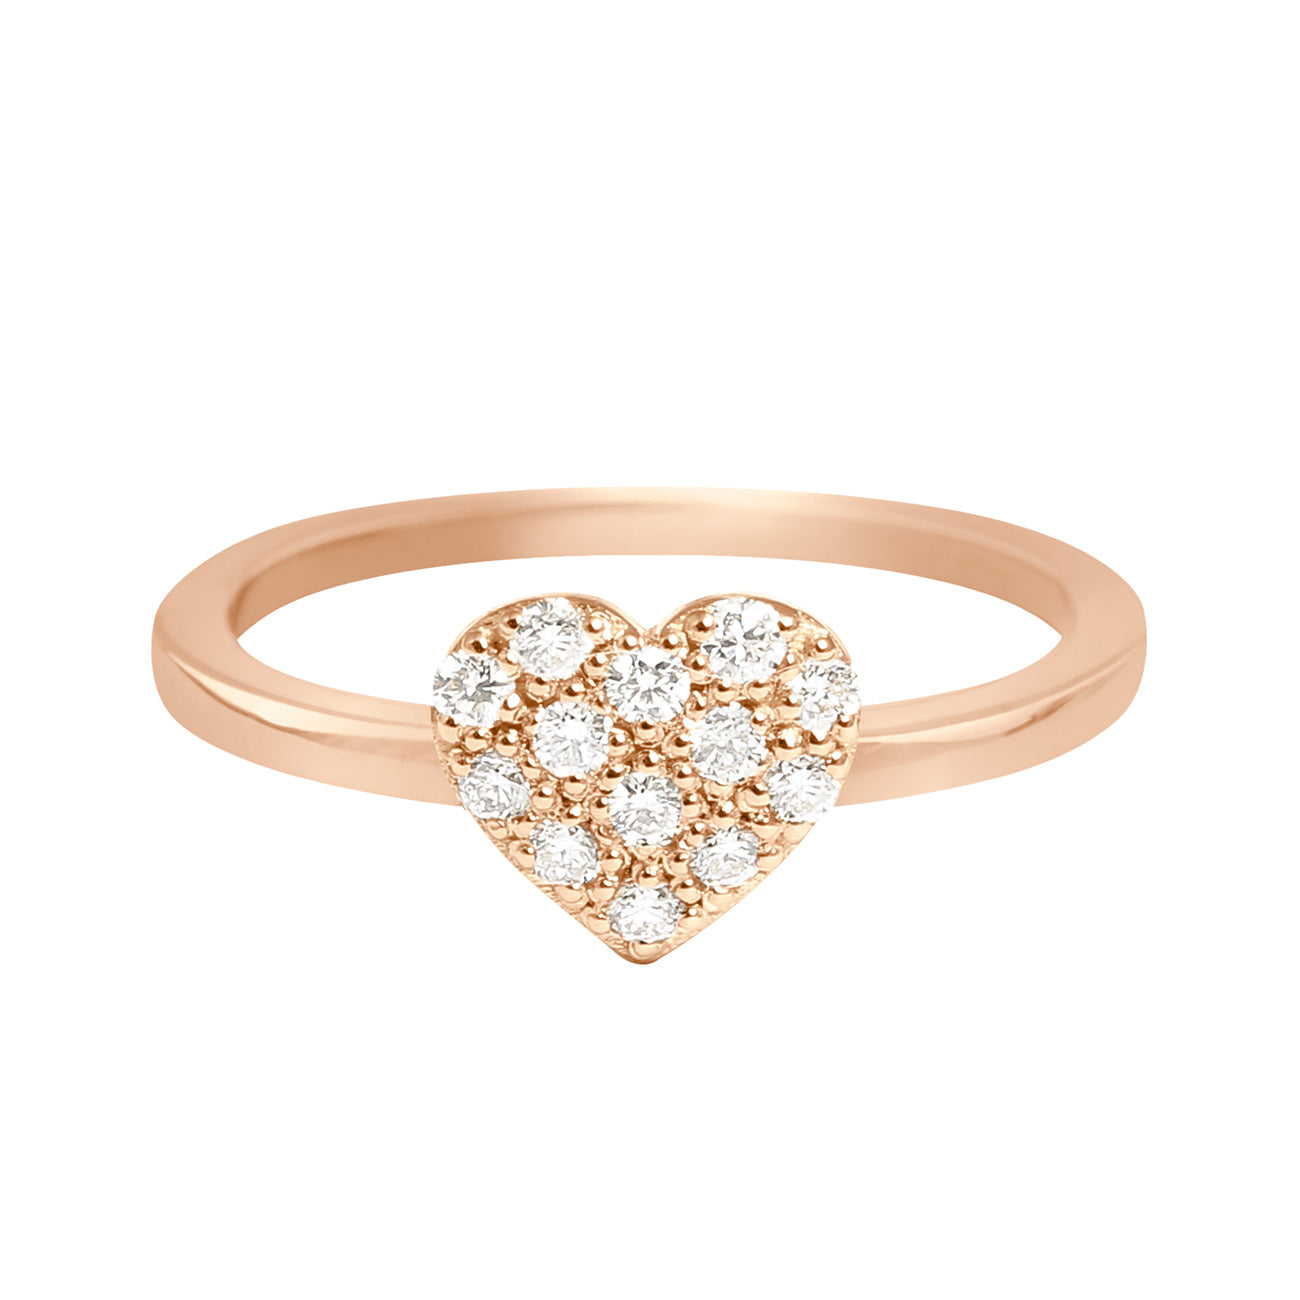 Gigi Clozeau - In Love Diamond Ring, Rose Gold, Size 5.75